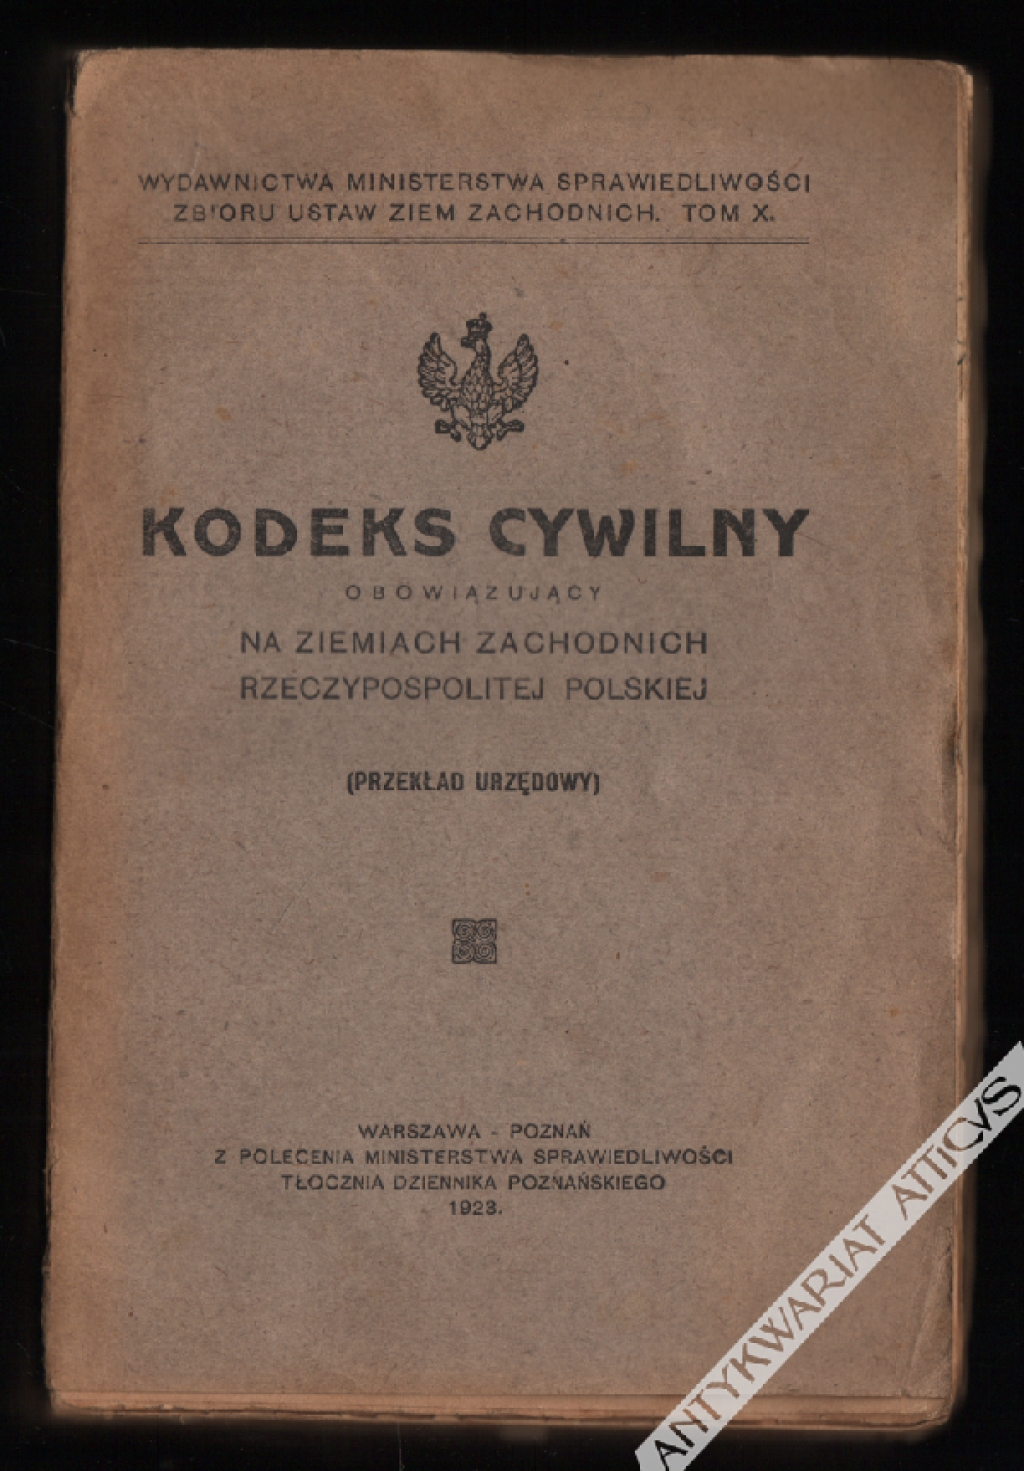 Kodeks cywilny obowiązujący na ziemiach zachodnich Rzeczypospolitej Polskiej (przekład urzędowy)